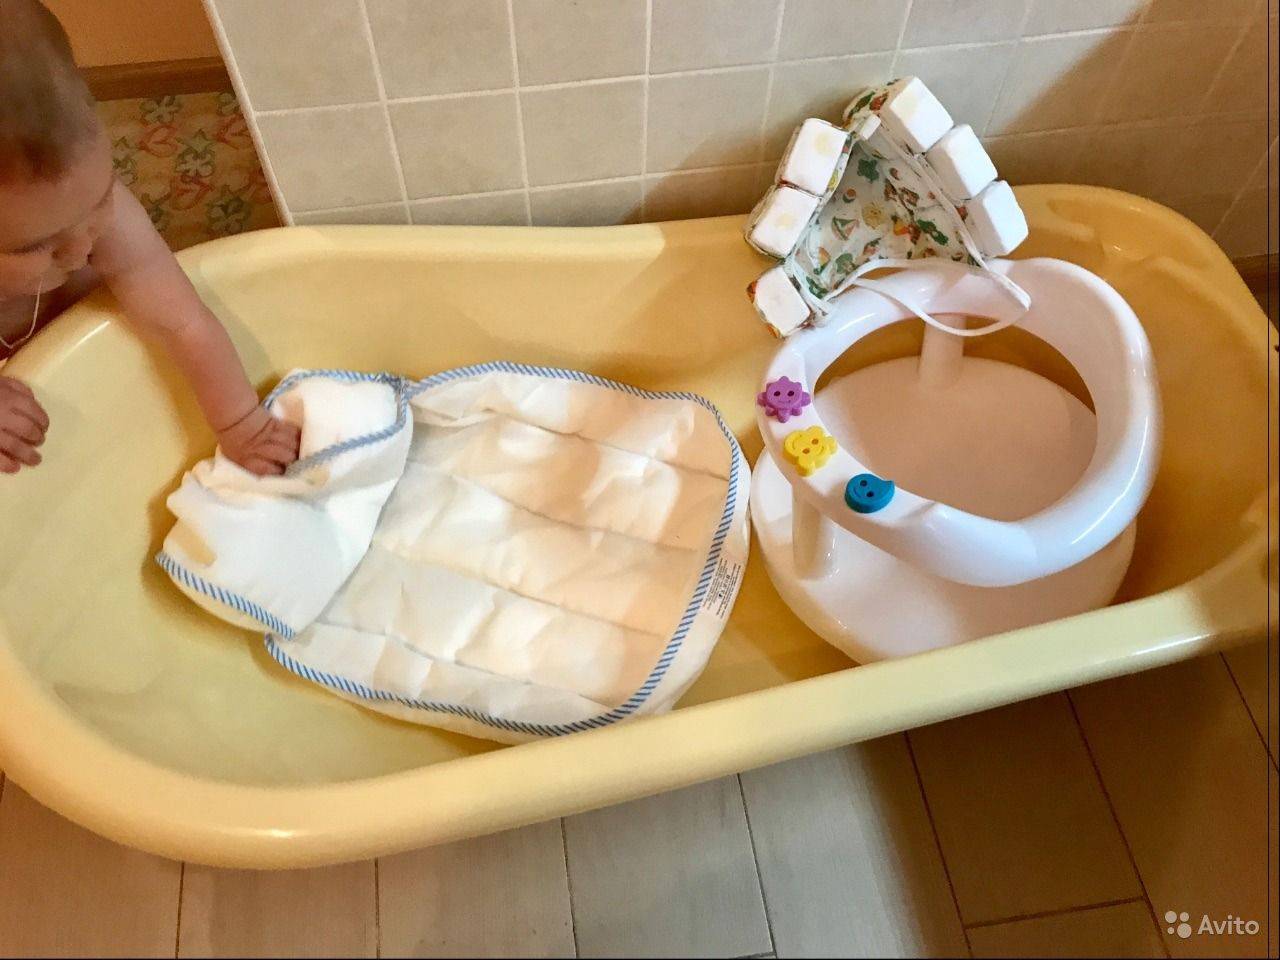 Гамак для купания новорожденных: нужен ли он и как выбрать правильный? — моироды.ру